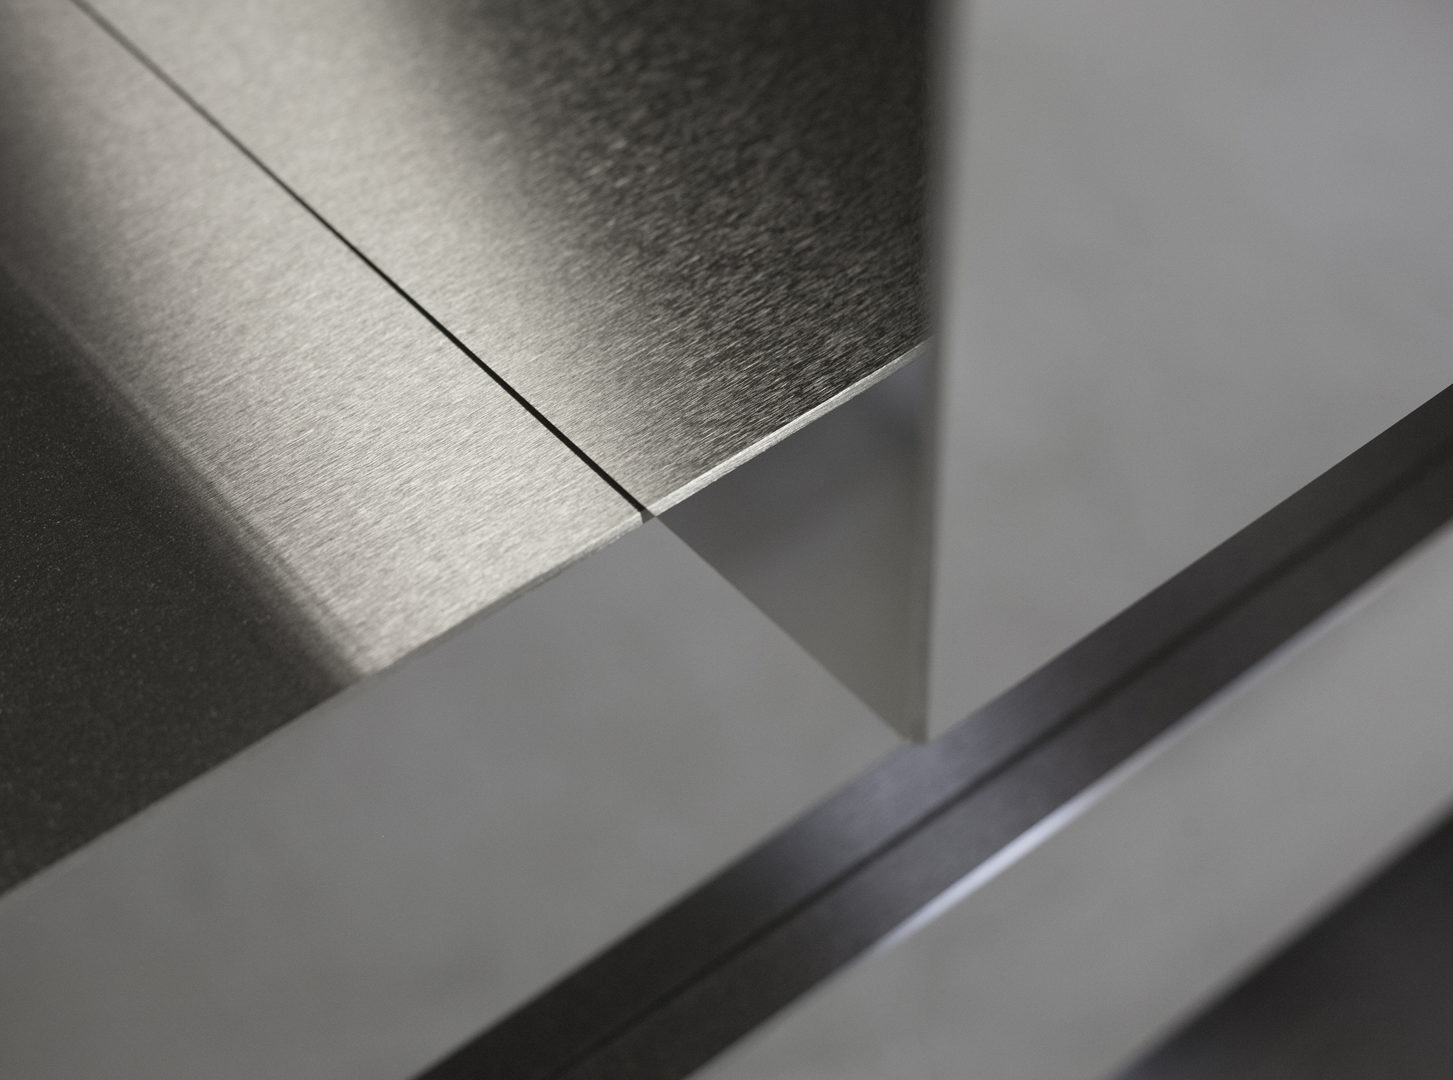 Strato_design_RIFLESSI#1_kitchen island_low cabinet_ mat stainless steel black_bronze_mirror stainless steel_06